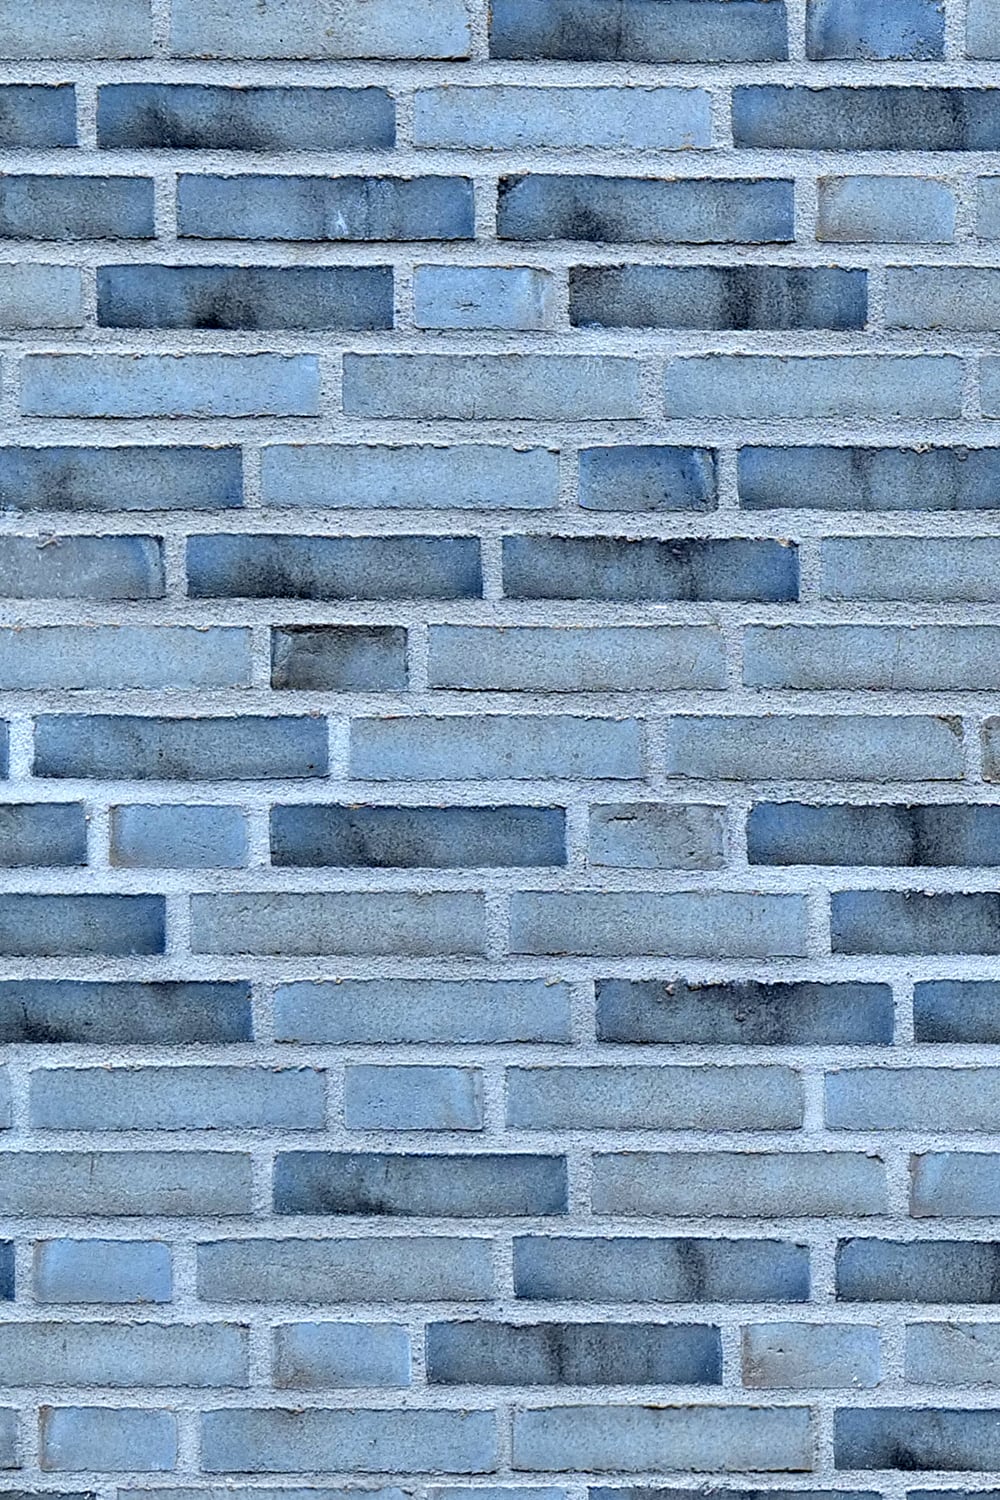 Monochrome Black & White Decorative Brick Wall, close-up